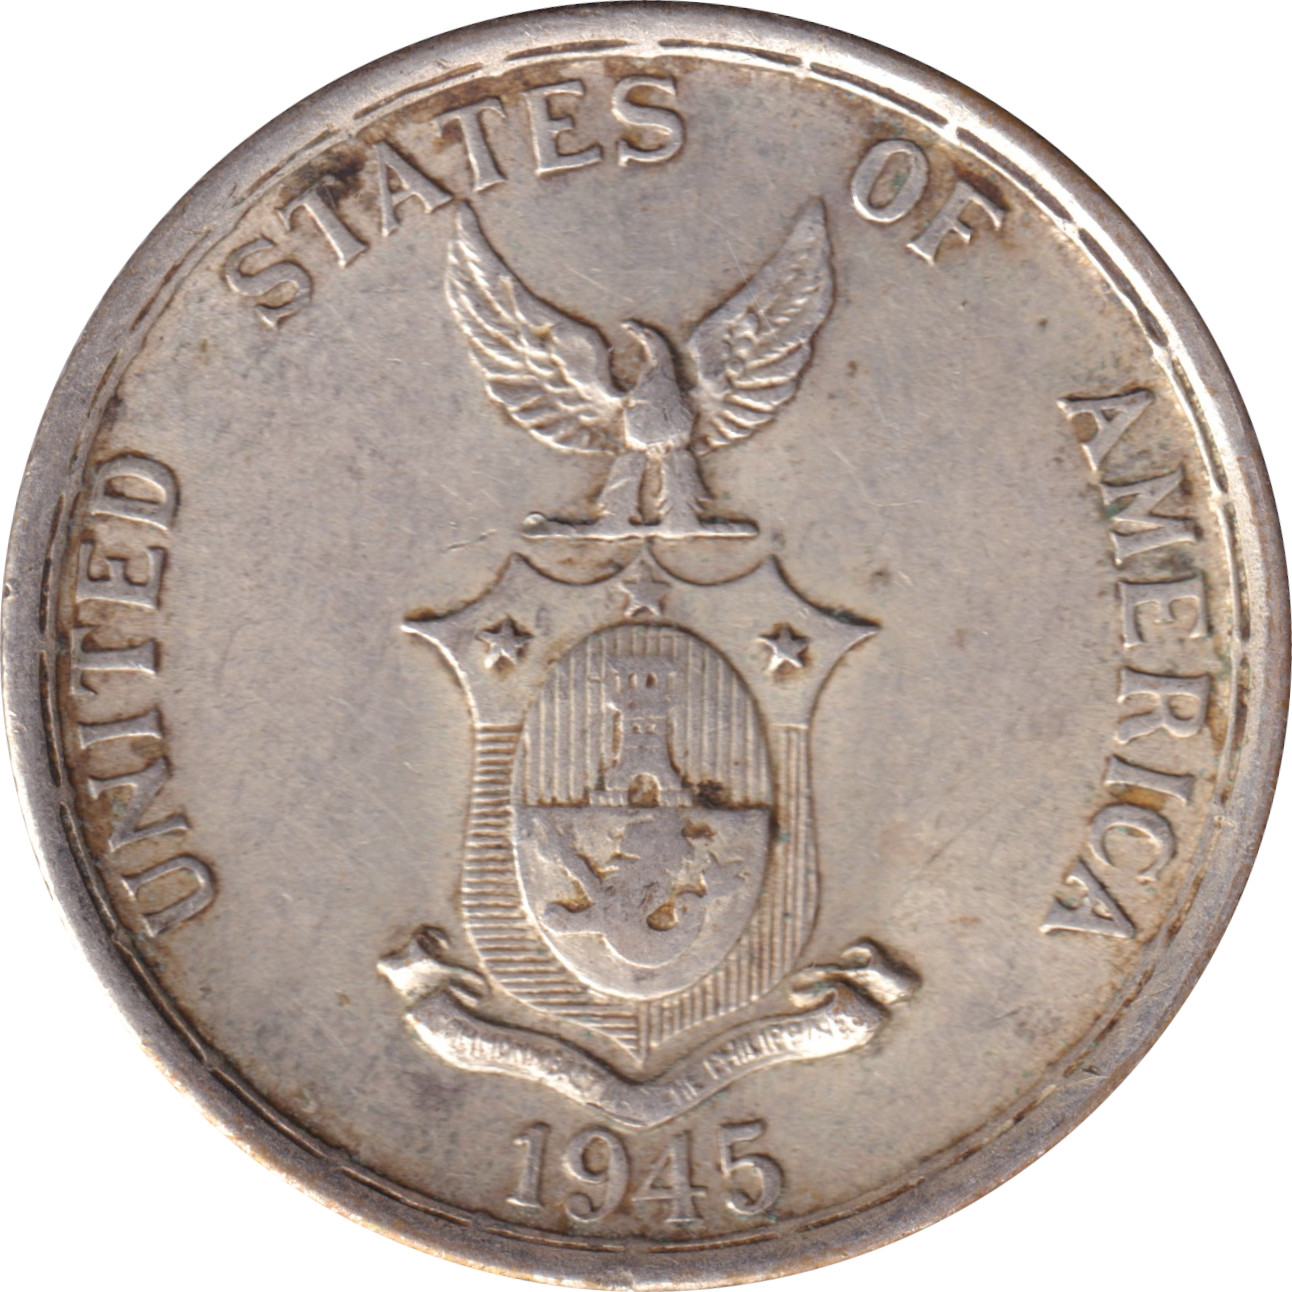 50 centavos - Emblème du Commonwealth